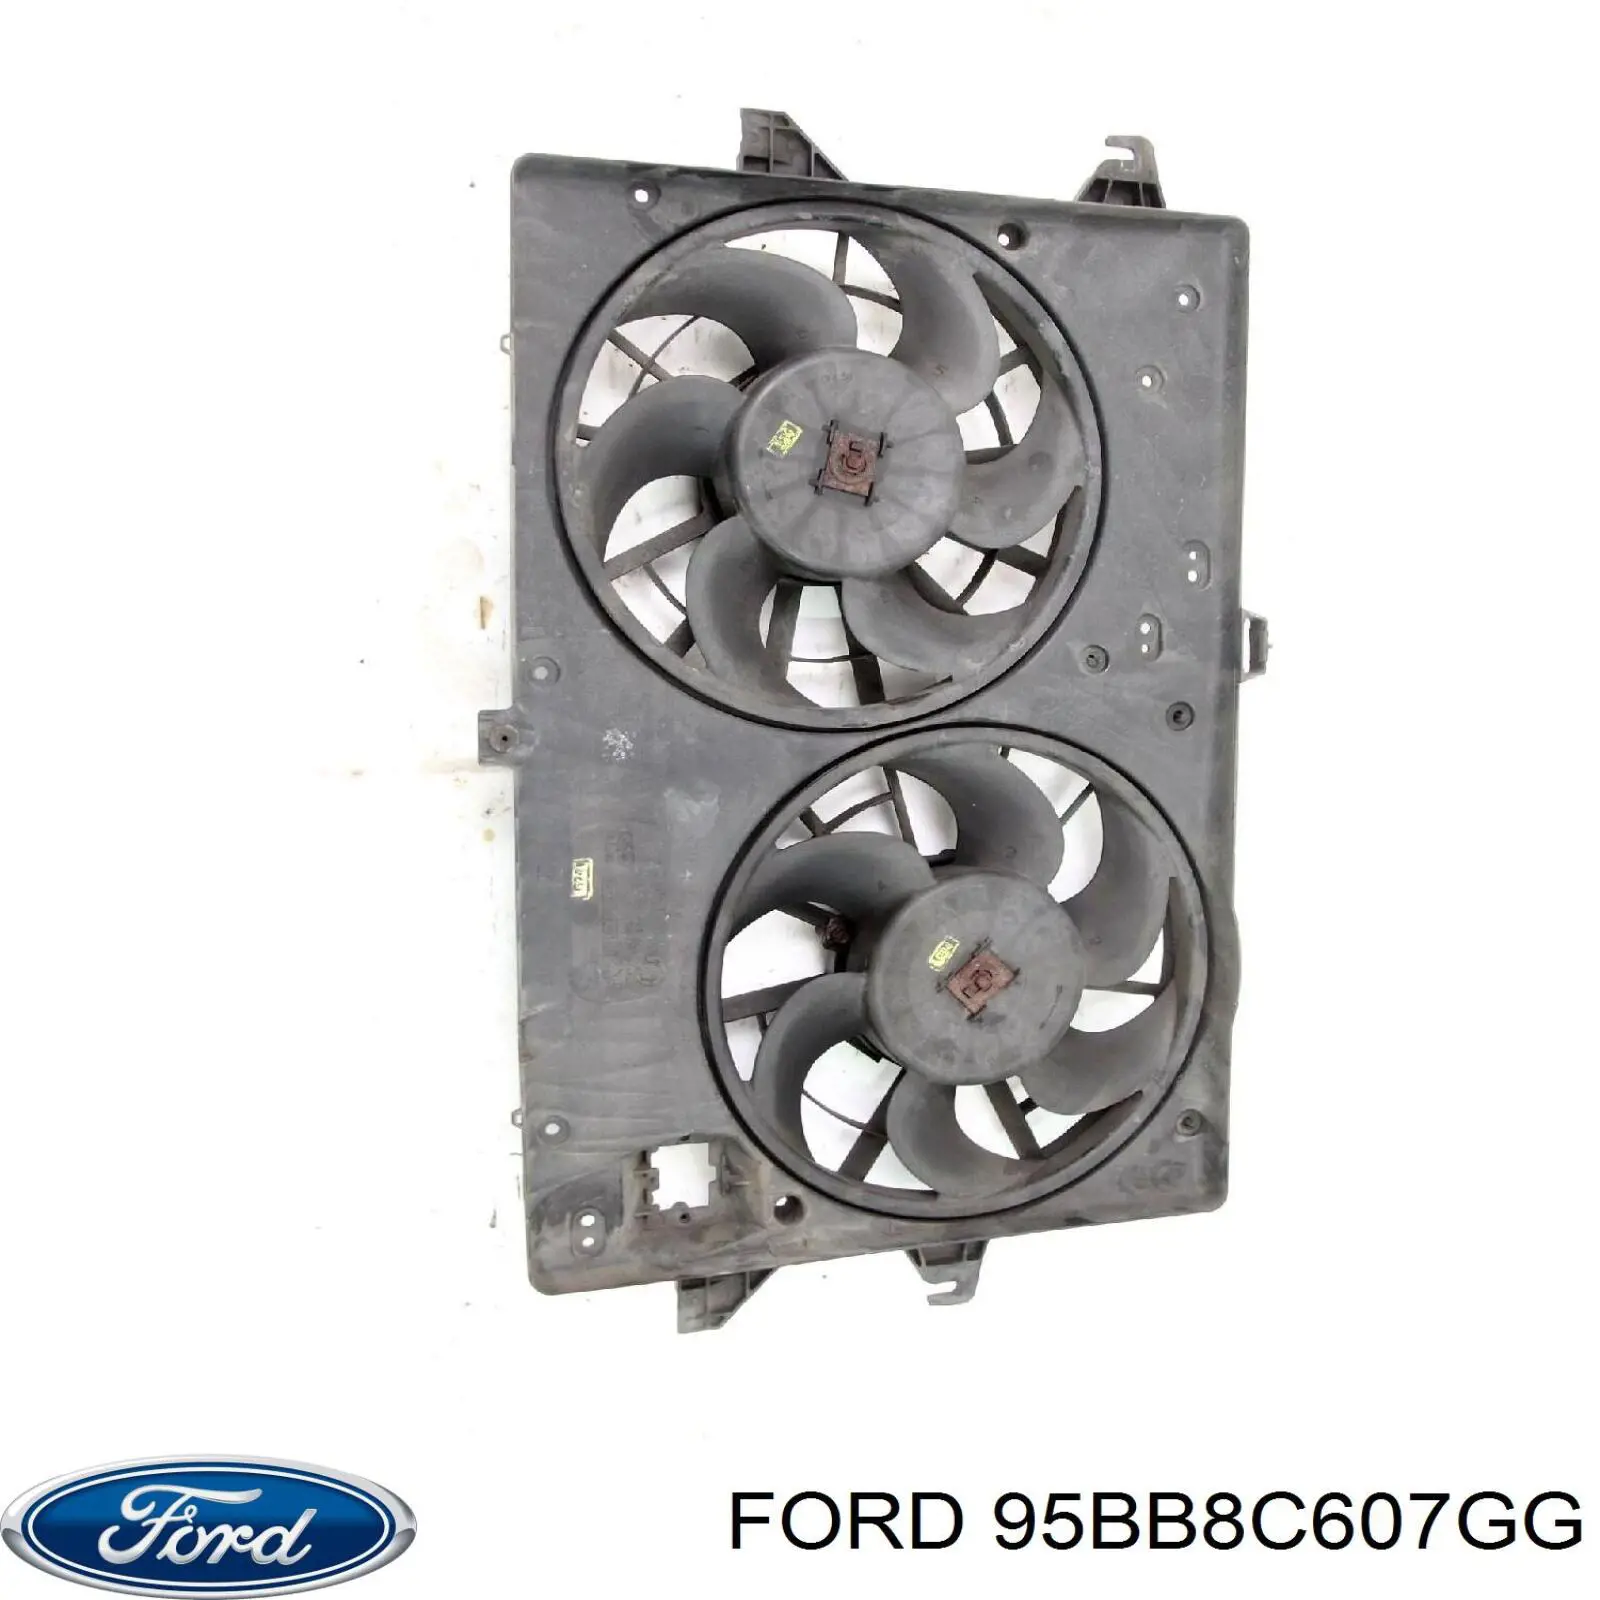 95BB8C607GG Ford difusor de radiador, ventilador de refrigeración, condensador del aire acondicionado, completo con motor y rodete